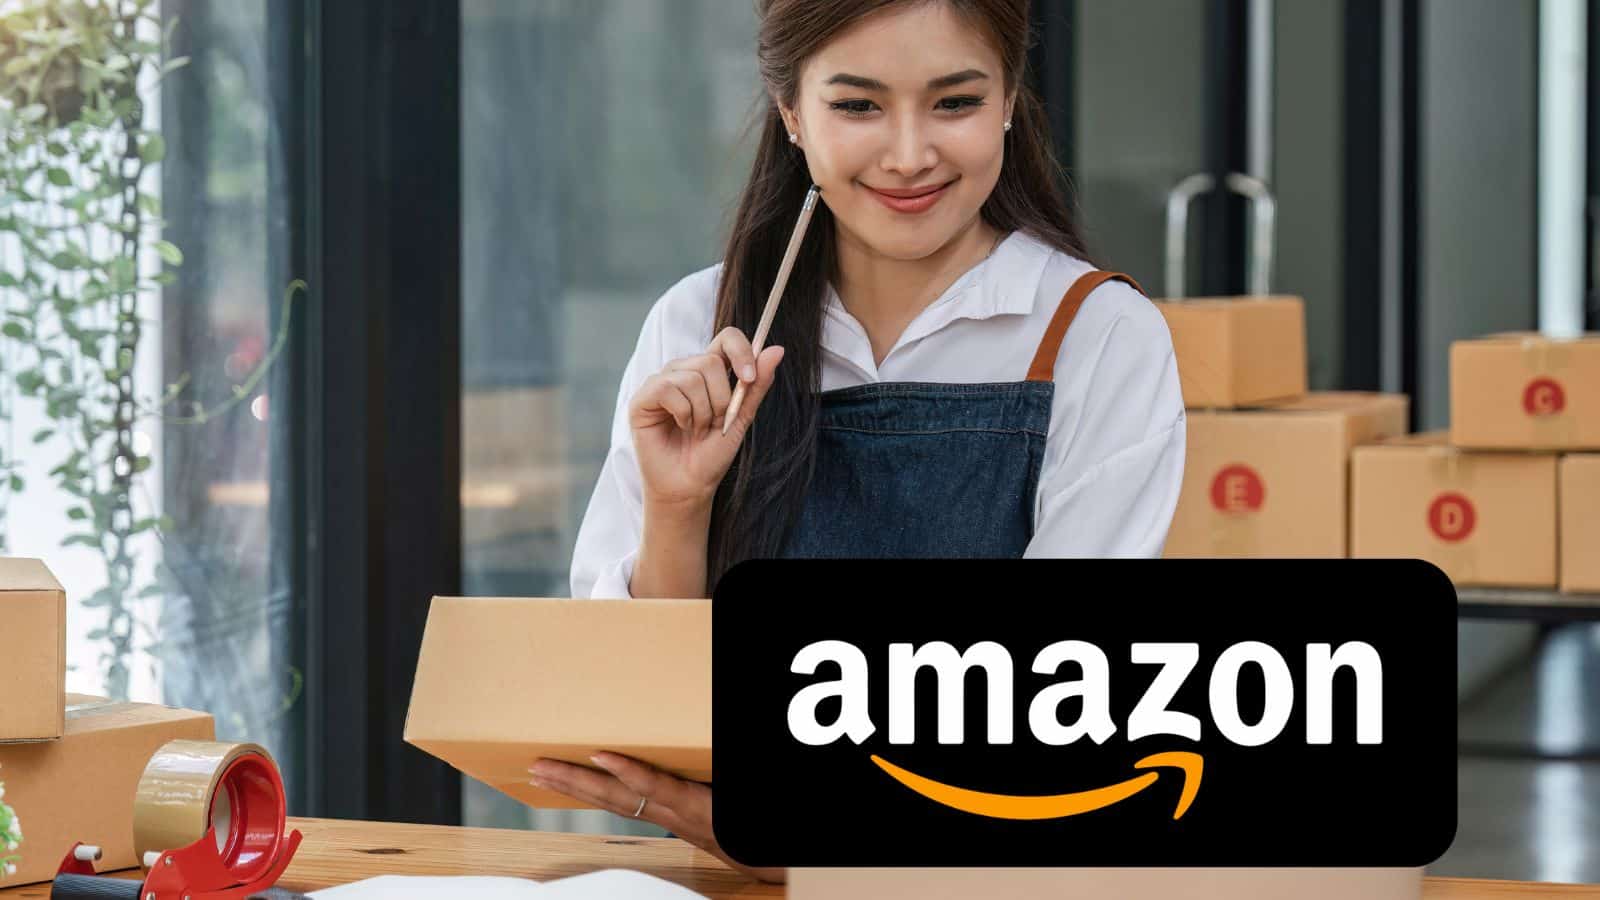 Amazon ASSURDA: offerte shock all'80% di sconto e smartphone GRATIS